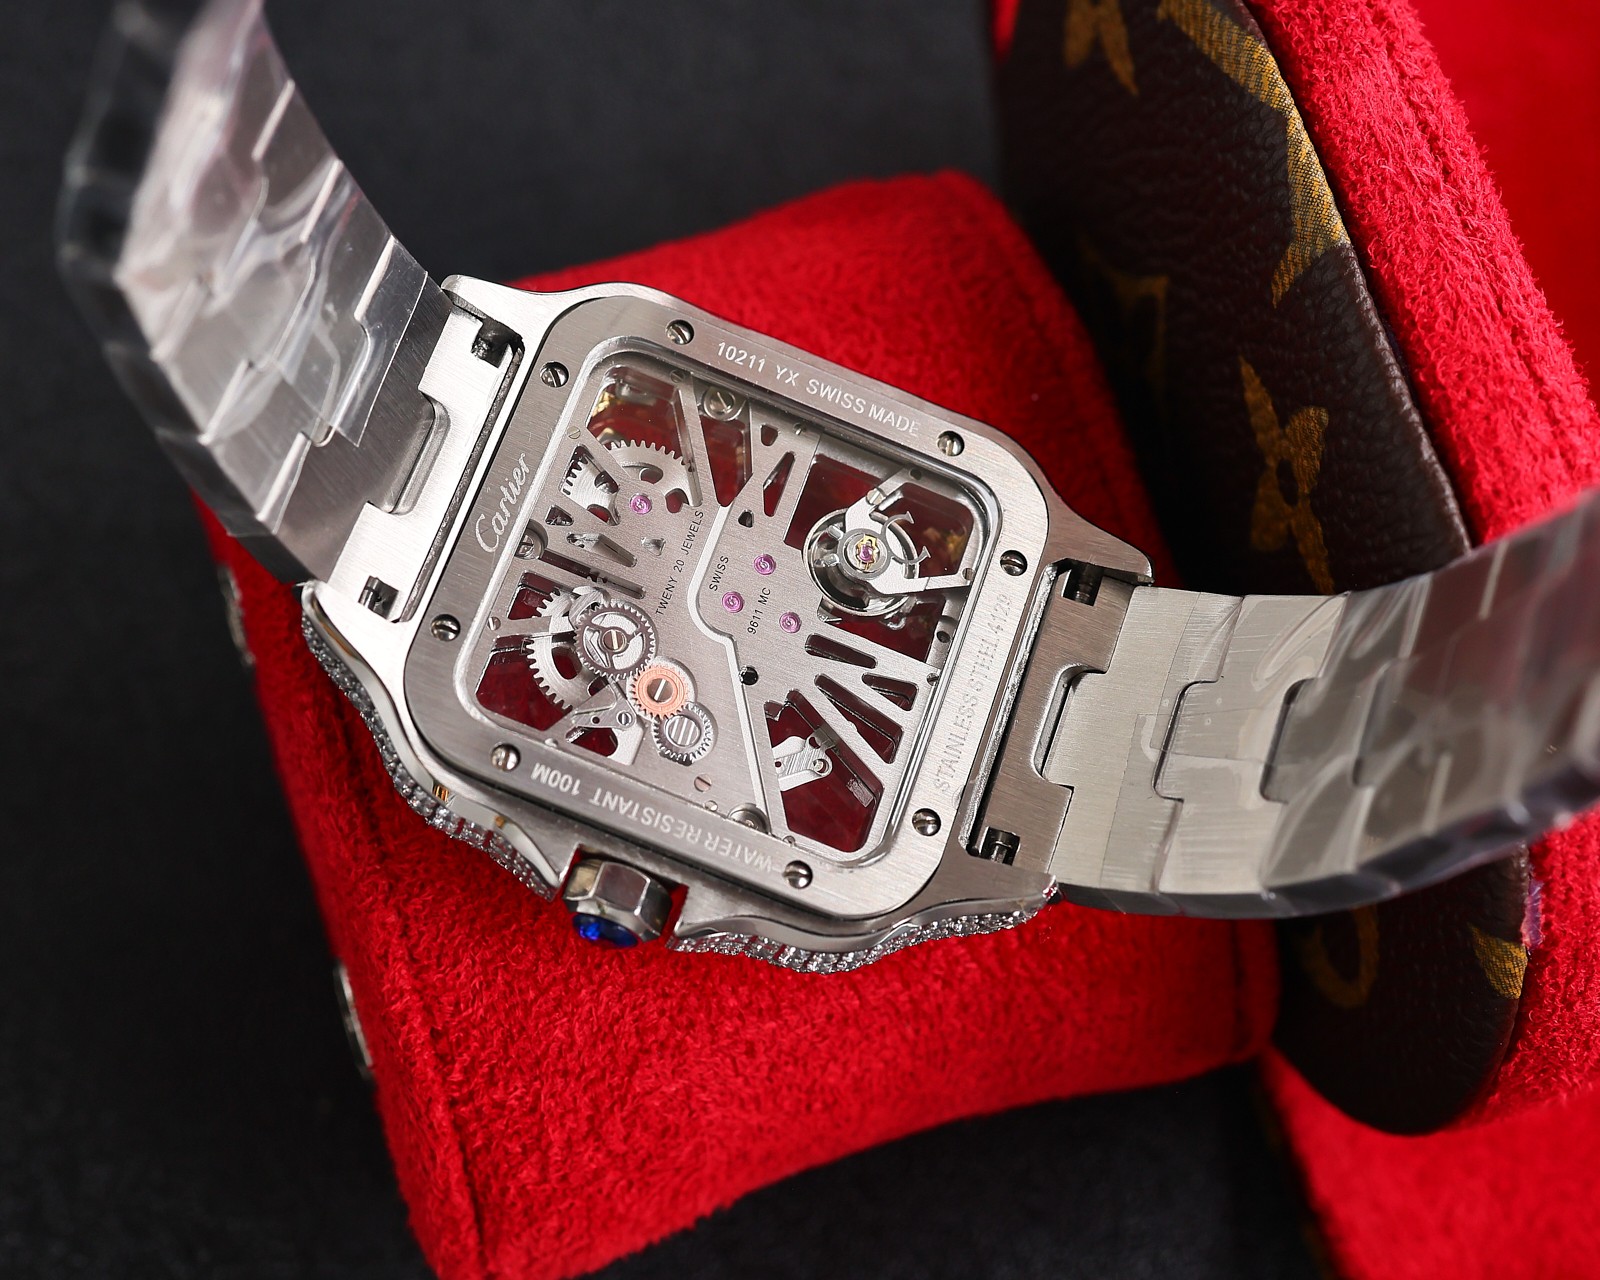 CARTIERカルティエ 腕時計 似てるスーパーコピー フランス 薄いワッチ レザー 四角い時計 スチールバンド_8